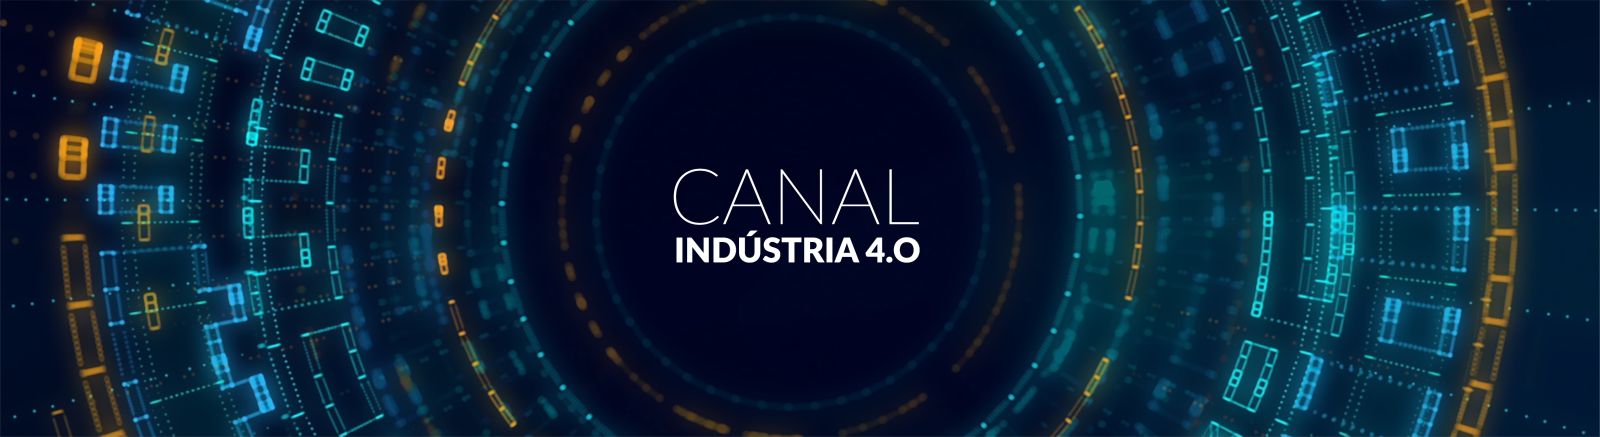 Canal Indústria 4.0